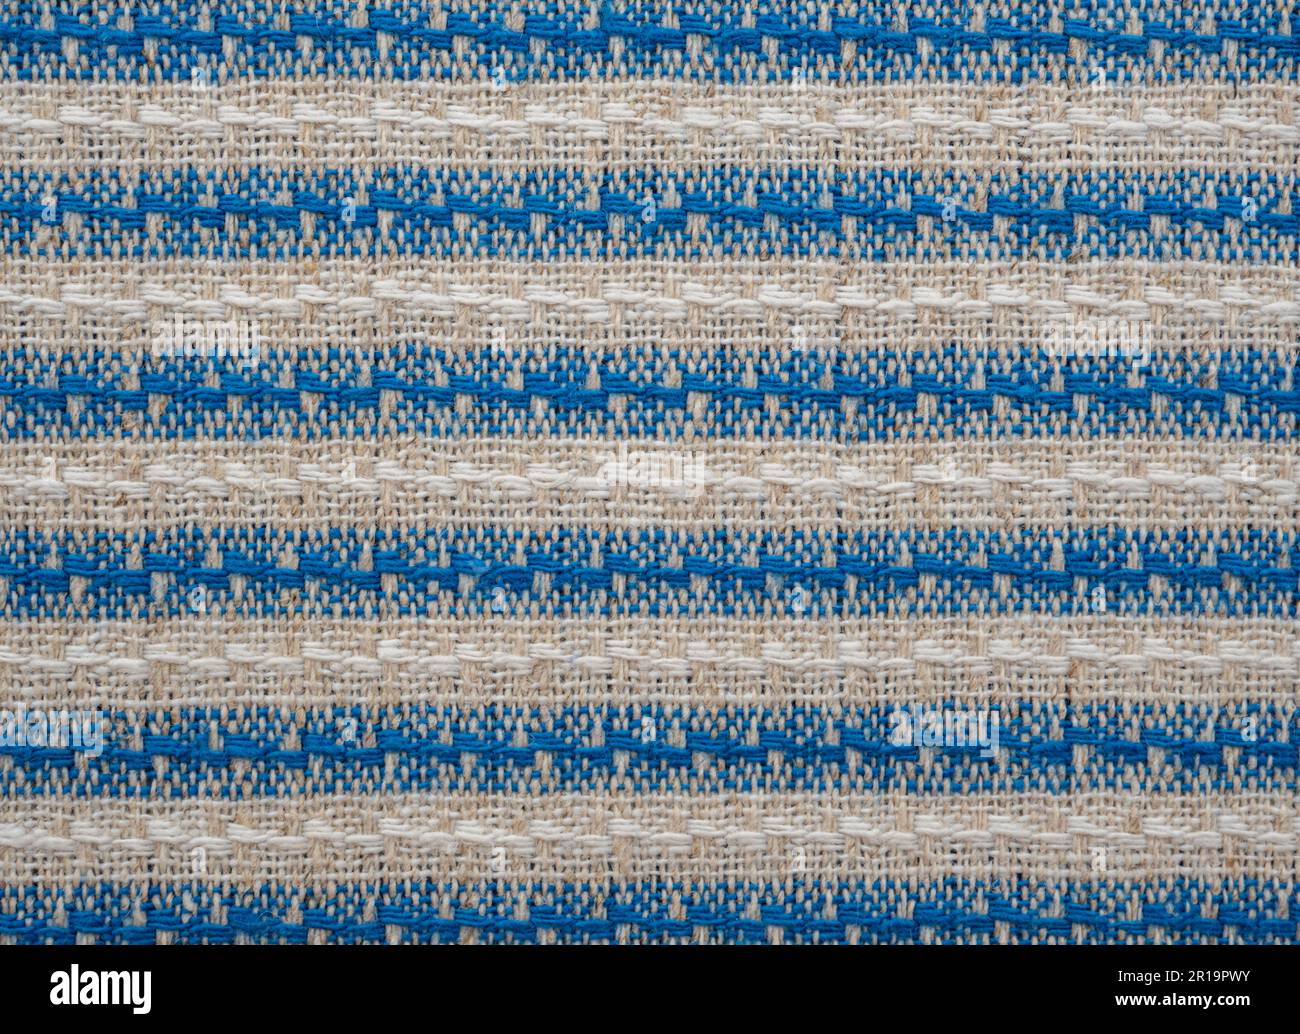 Texturhintergrund mit horizontalen Streifen in Blau, Grau und weiß. Natürliches Flachs-Material. Ornament auf Leinentuch. Abstact-Muster Stockfoto